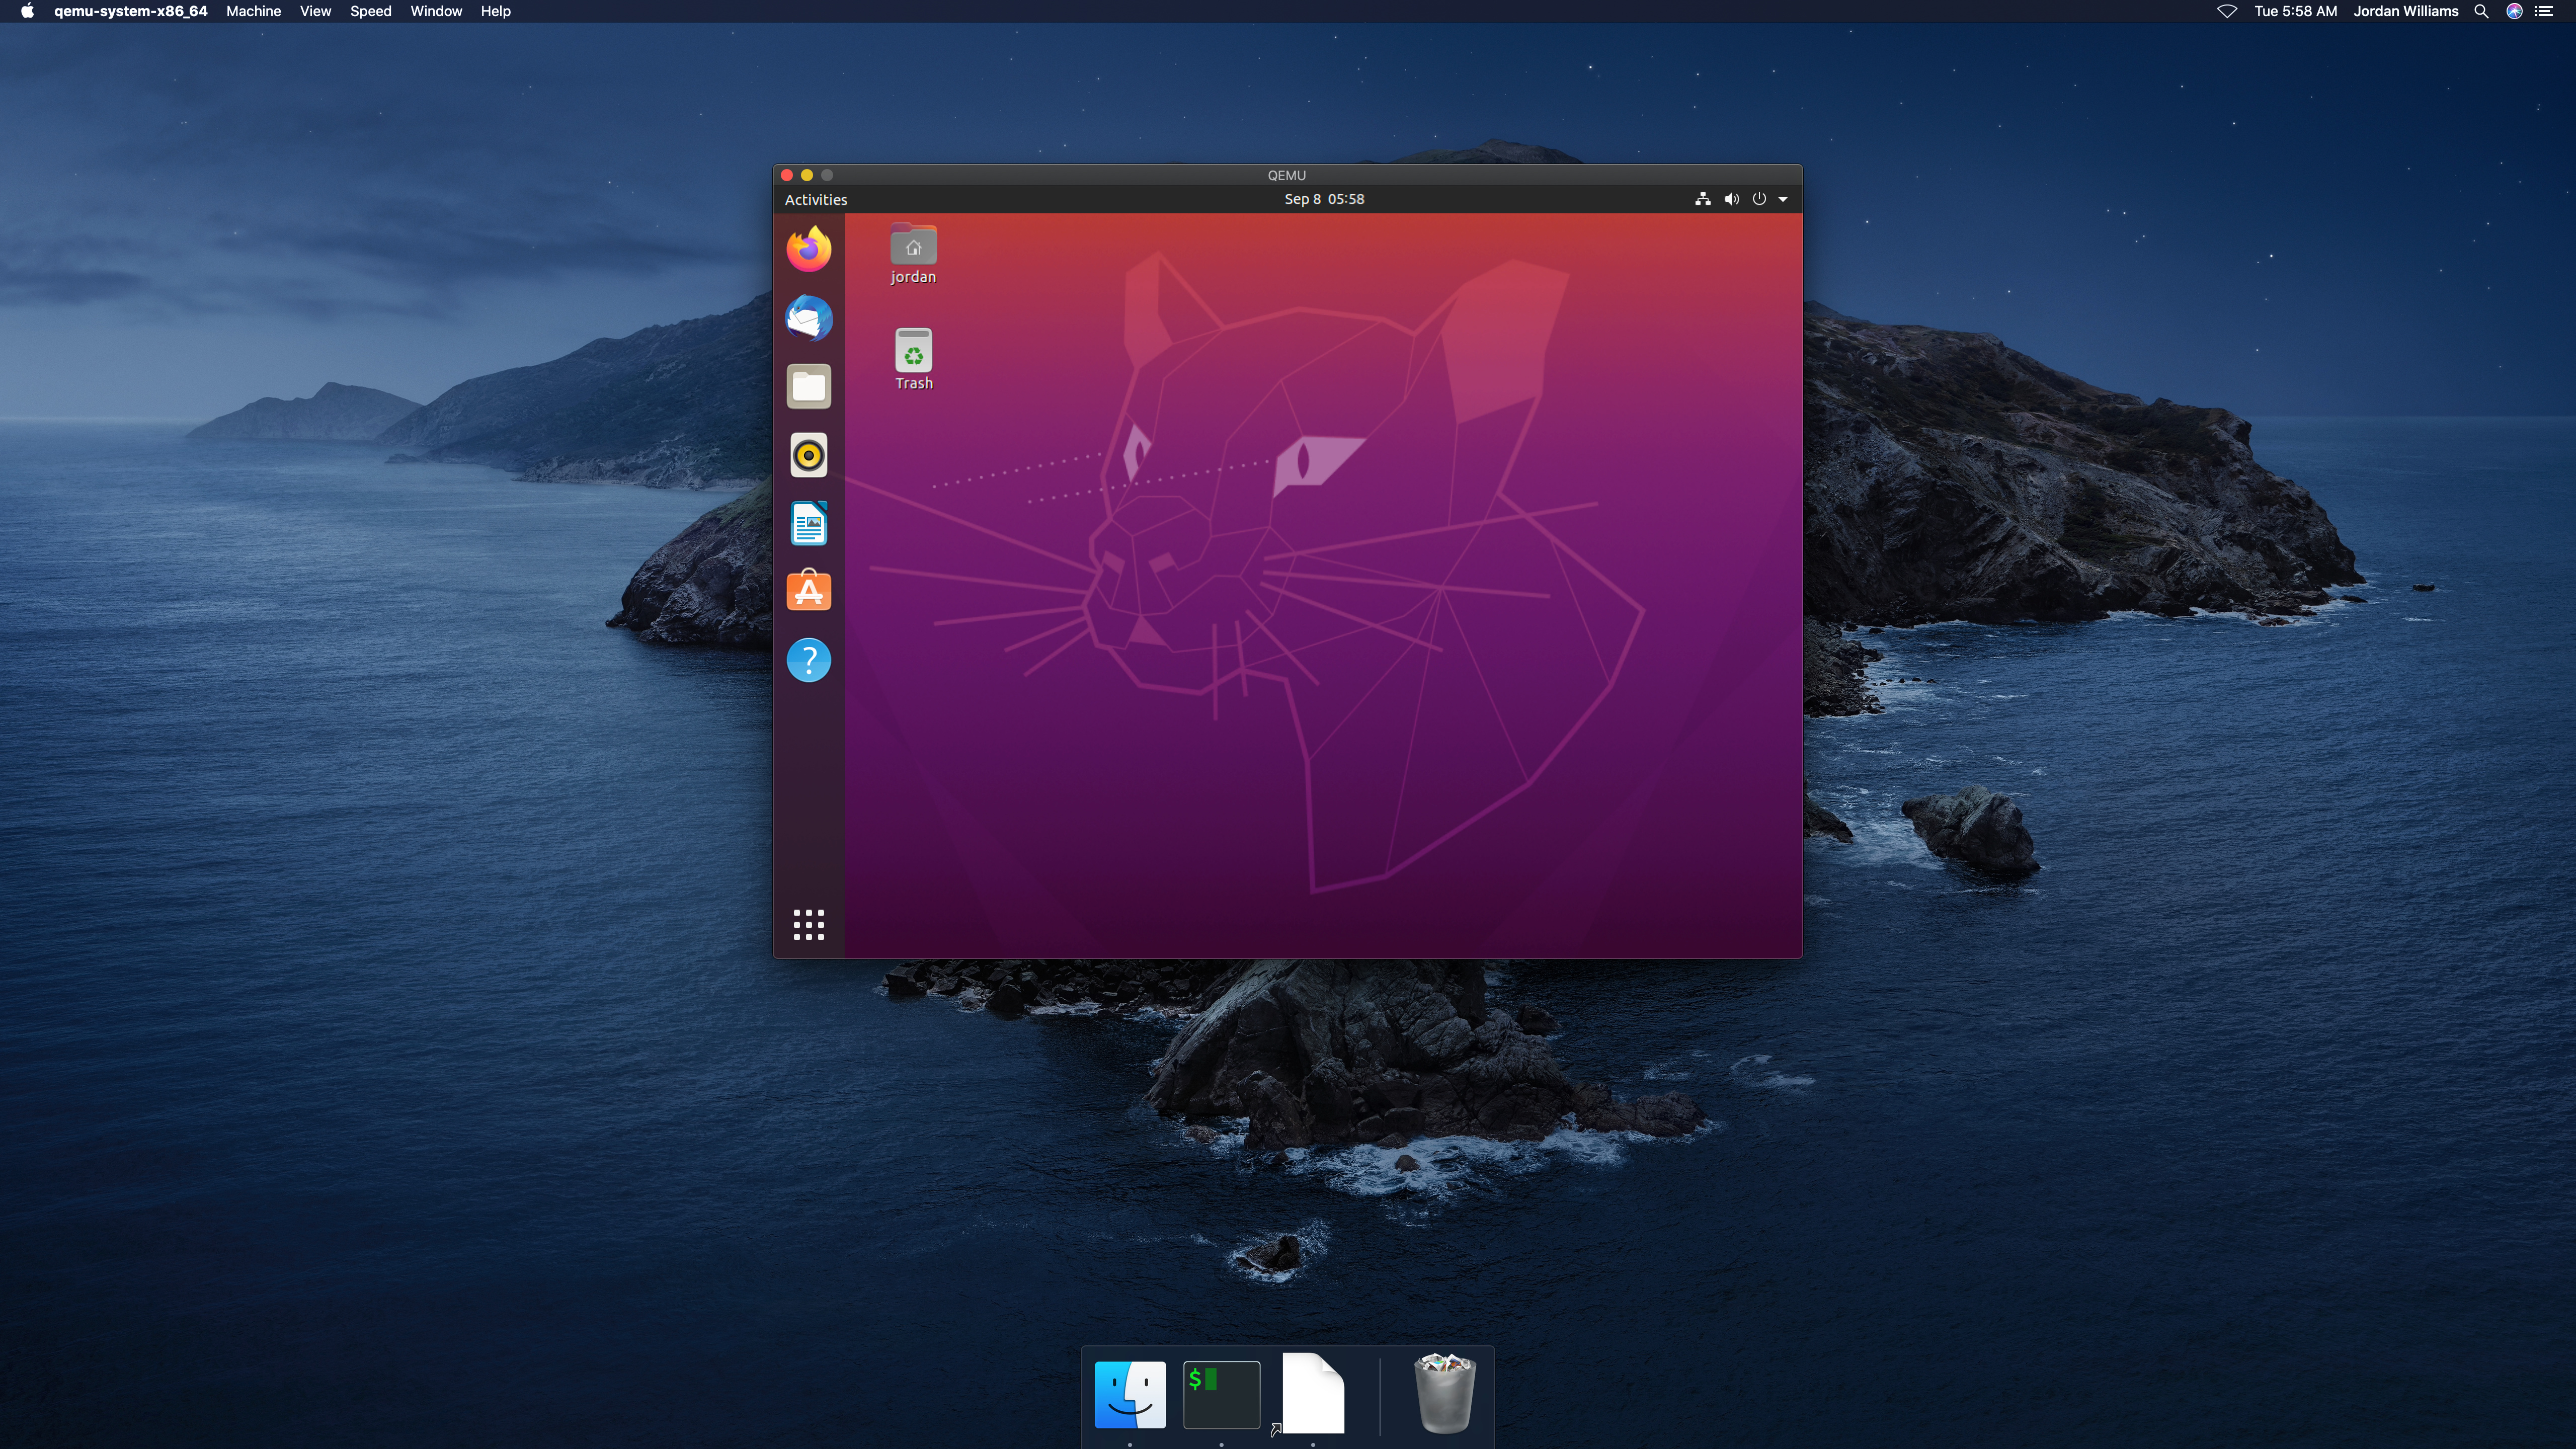 An Ubuntu Desktop on macOS Catalina